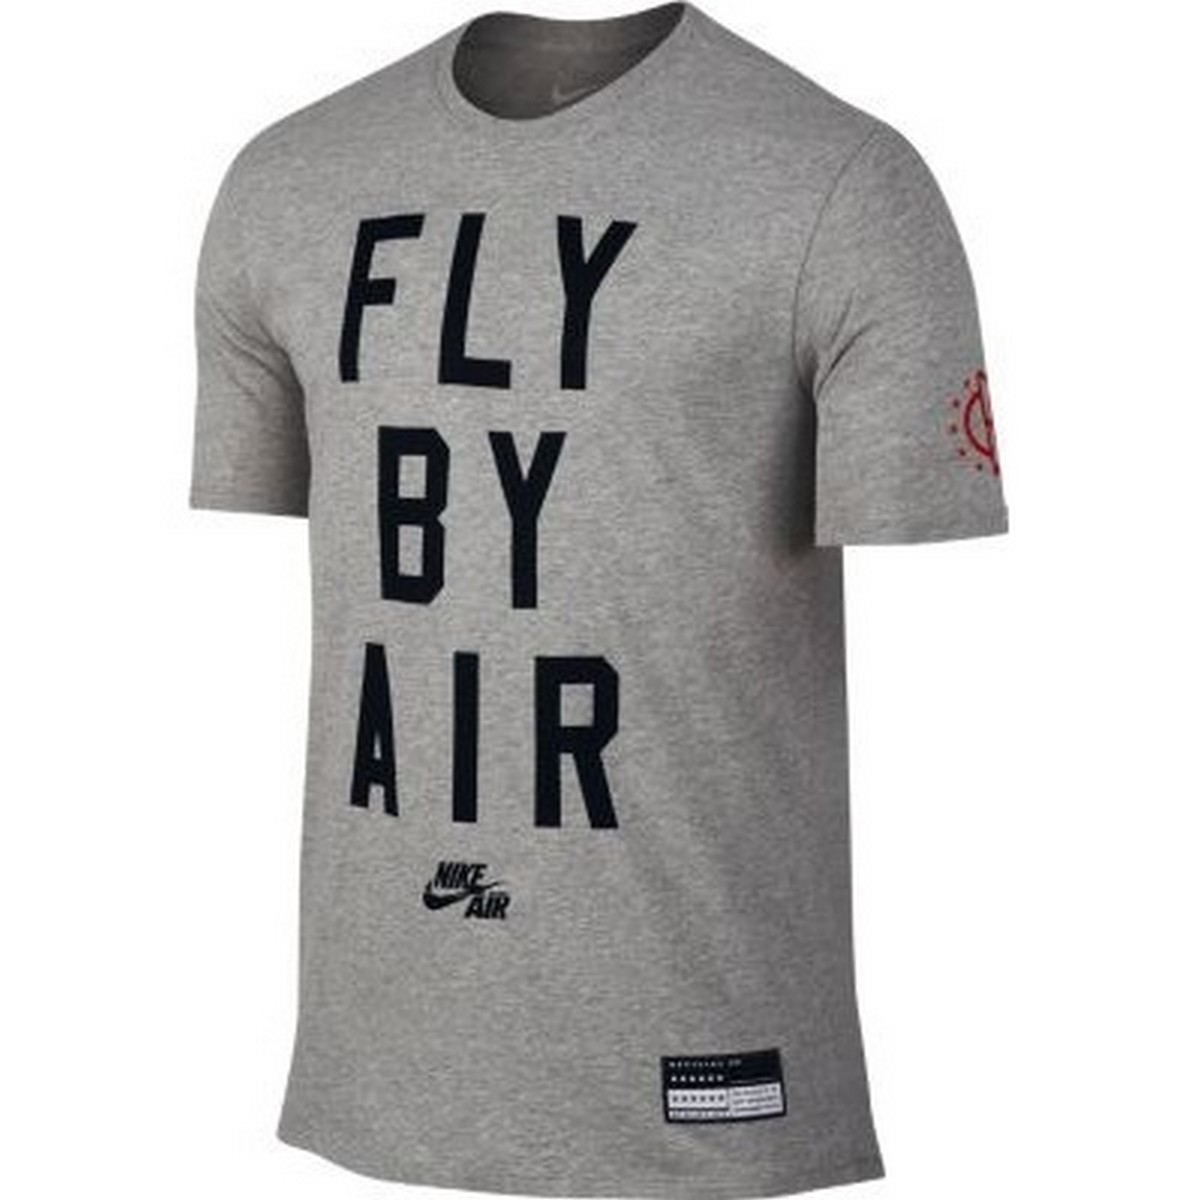 Nike Majica NIKE AIR FLY BY TEE 